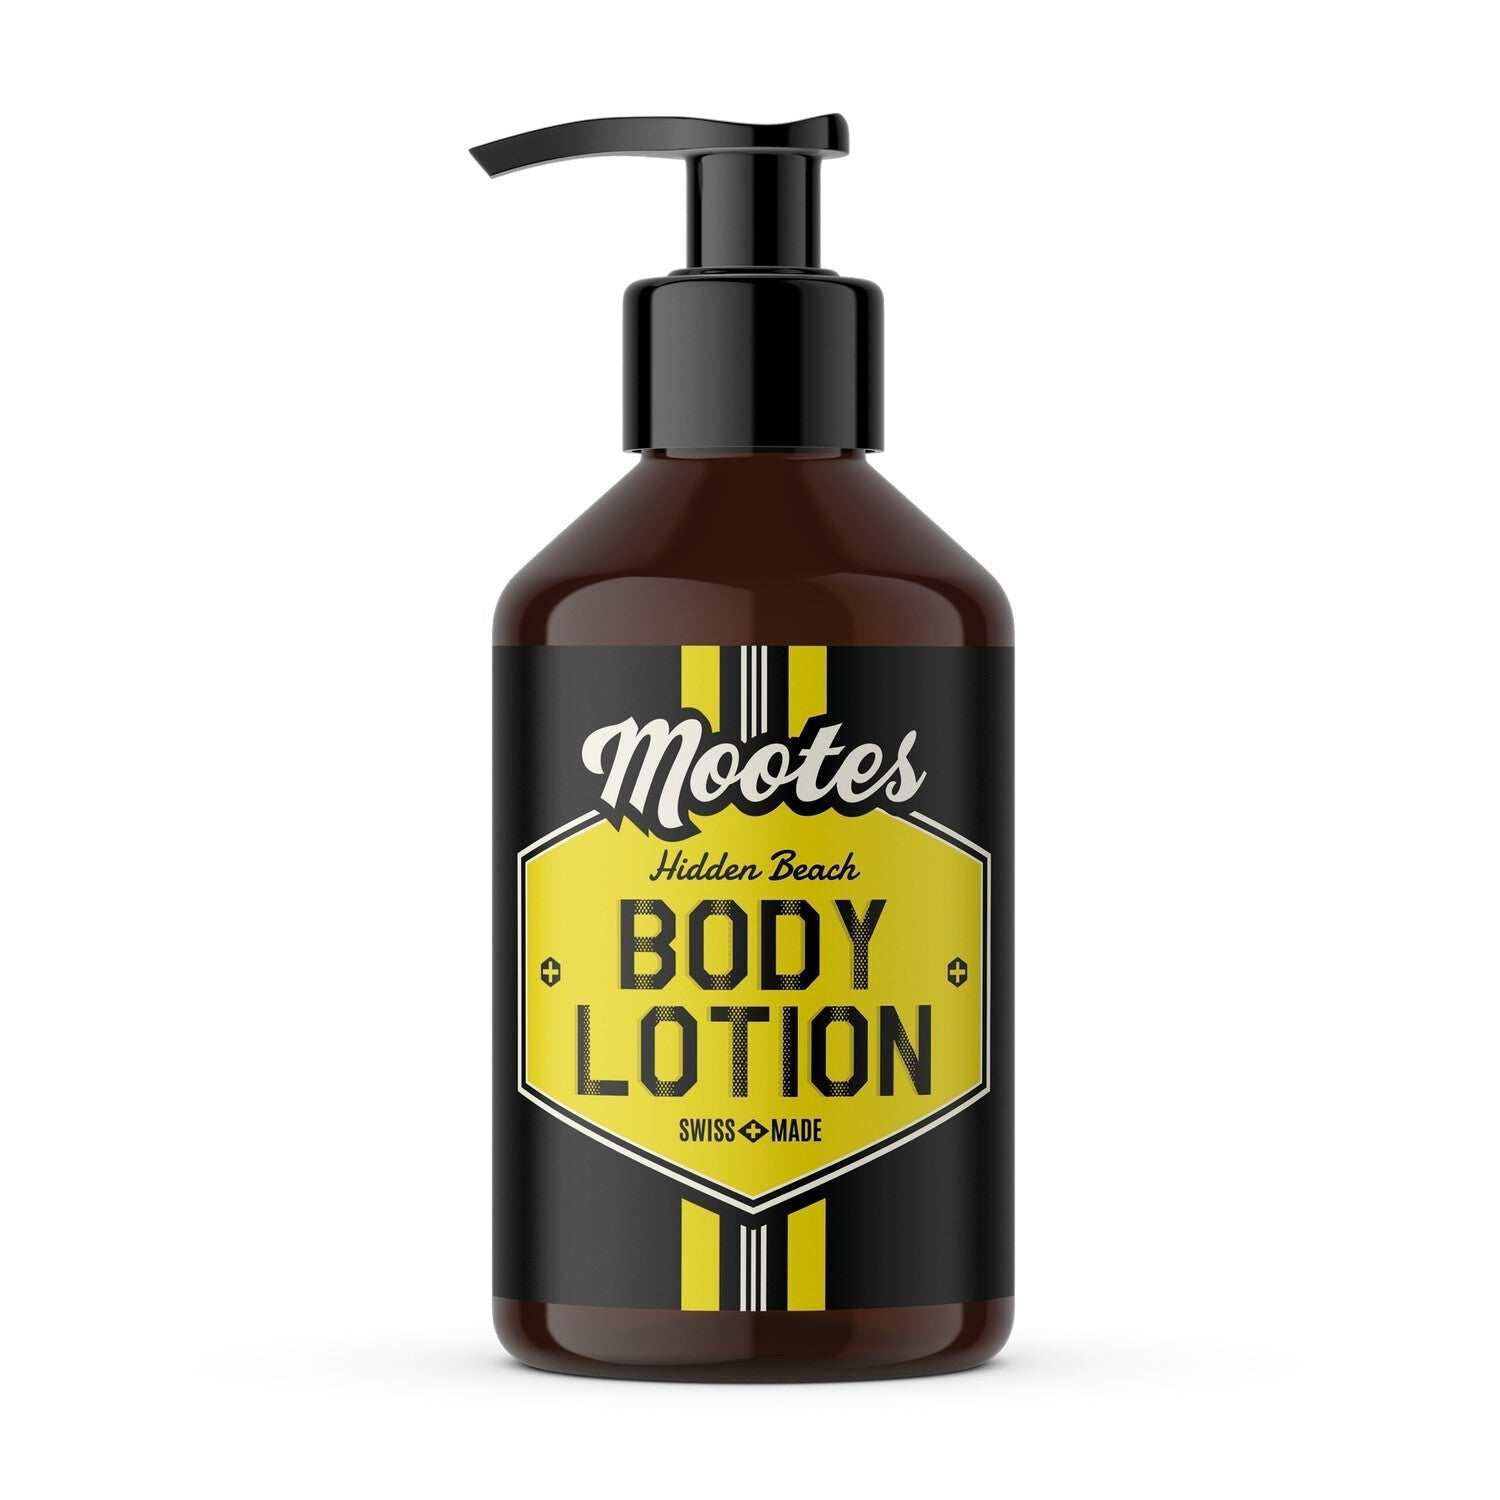 Bodylotion Hidden Beach - Mootes